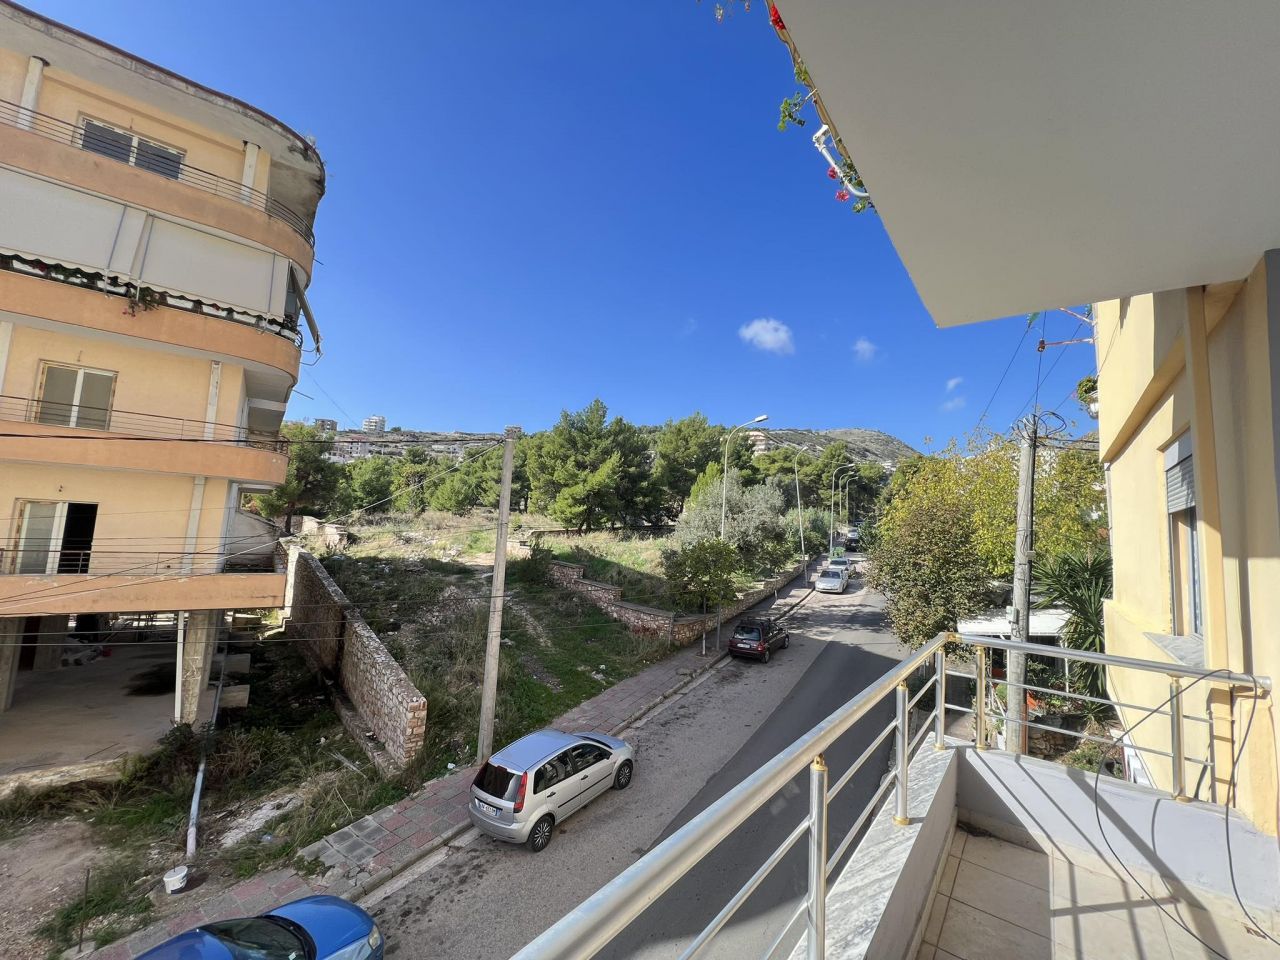 Mieszkanie Z Dwiema Sypialniami Na Sprzedaż W Sarandzie  W Albanii